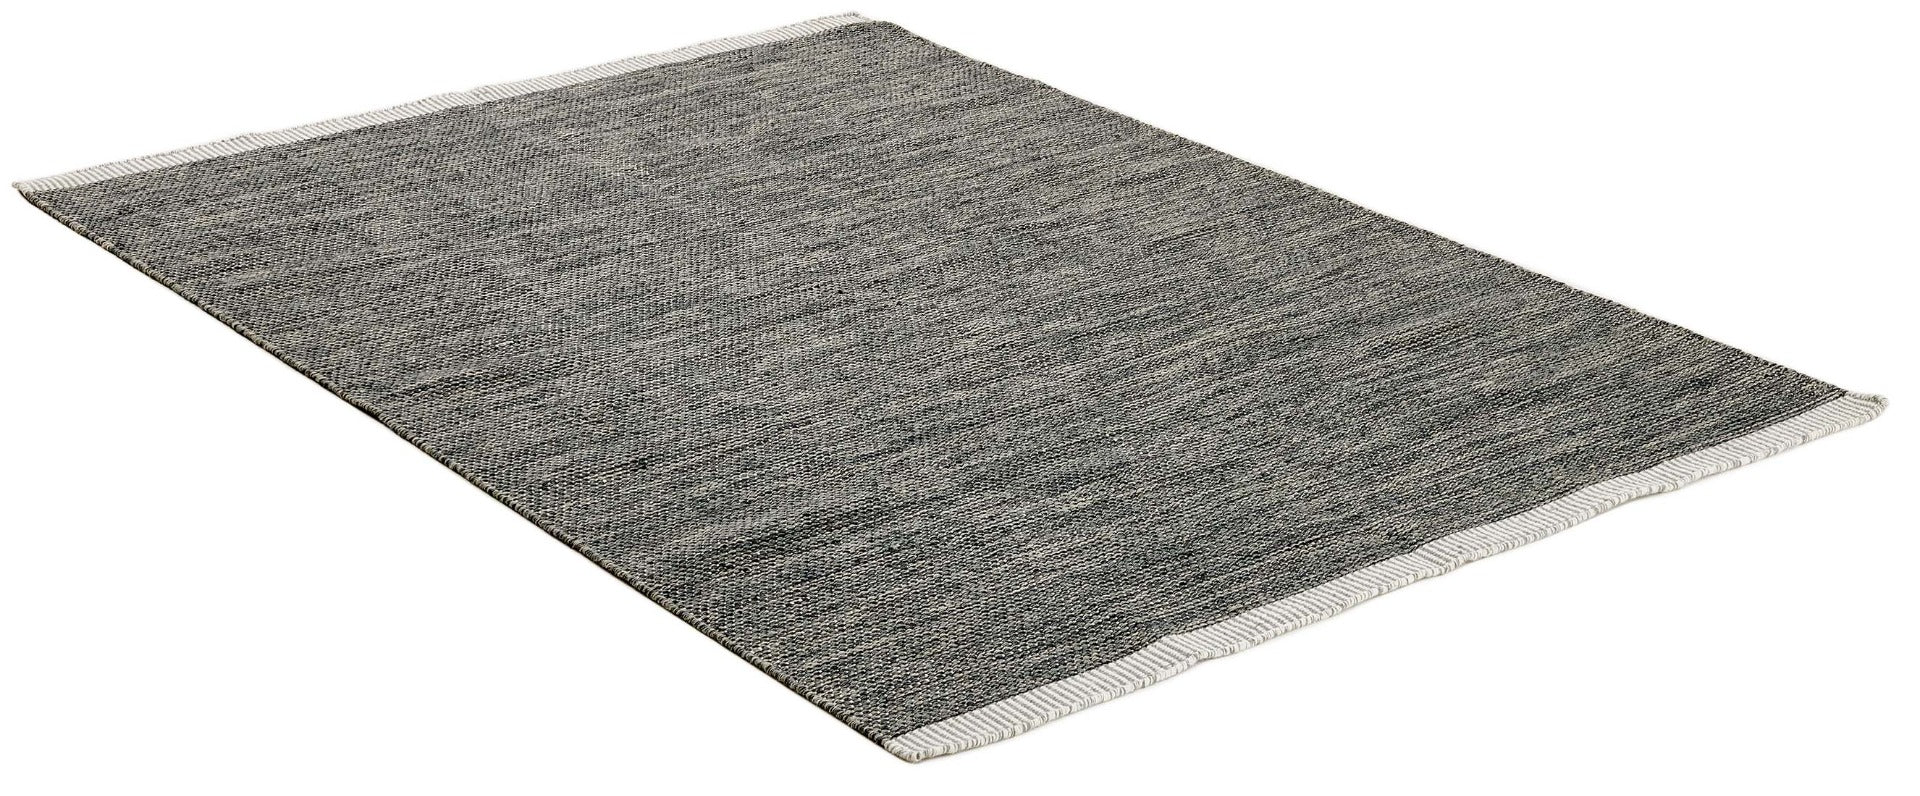 plain black and green flatweave wool rug
